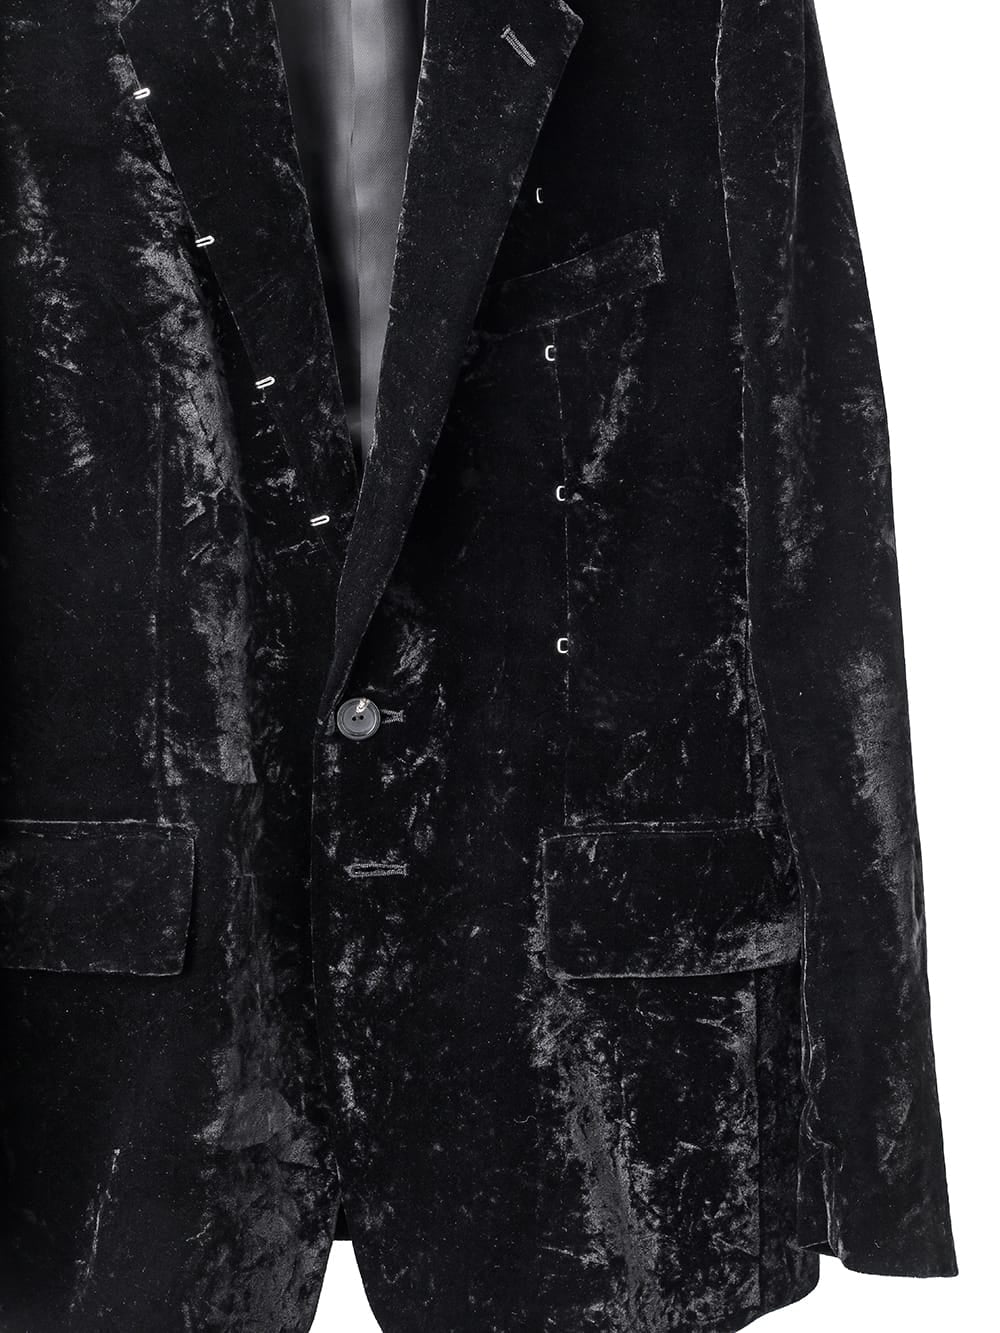 right - left jacket.(velvet)